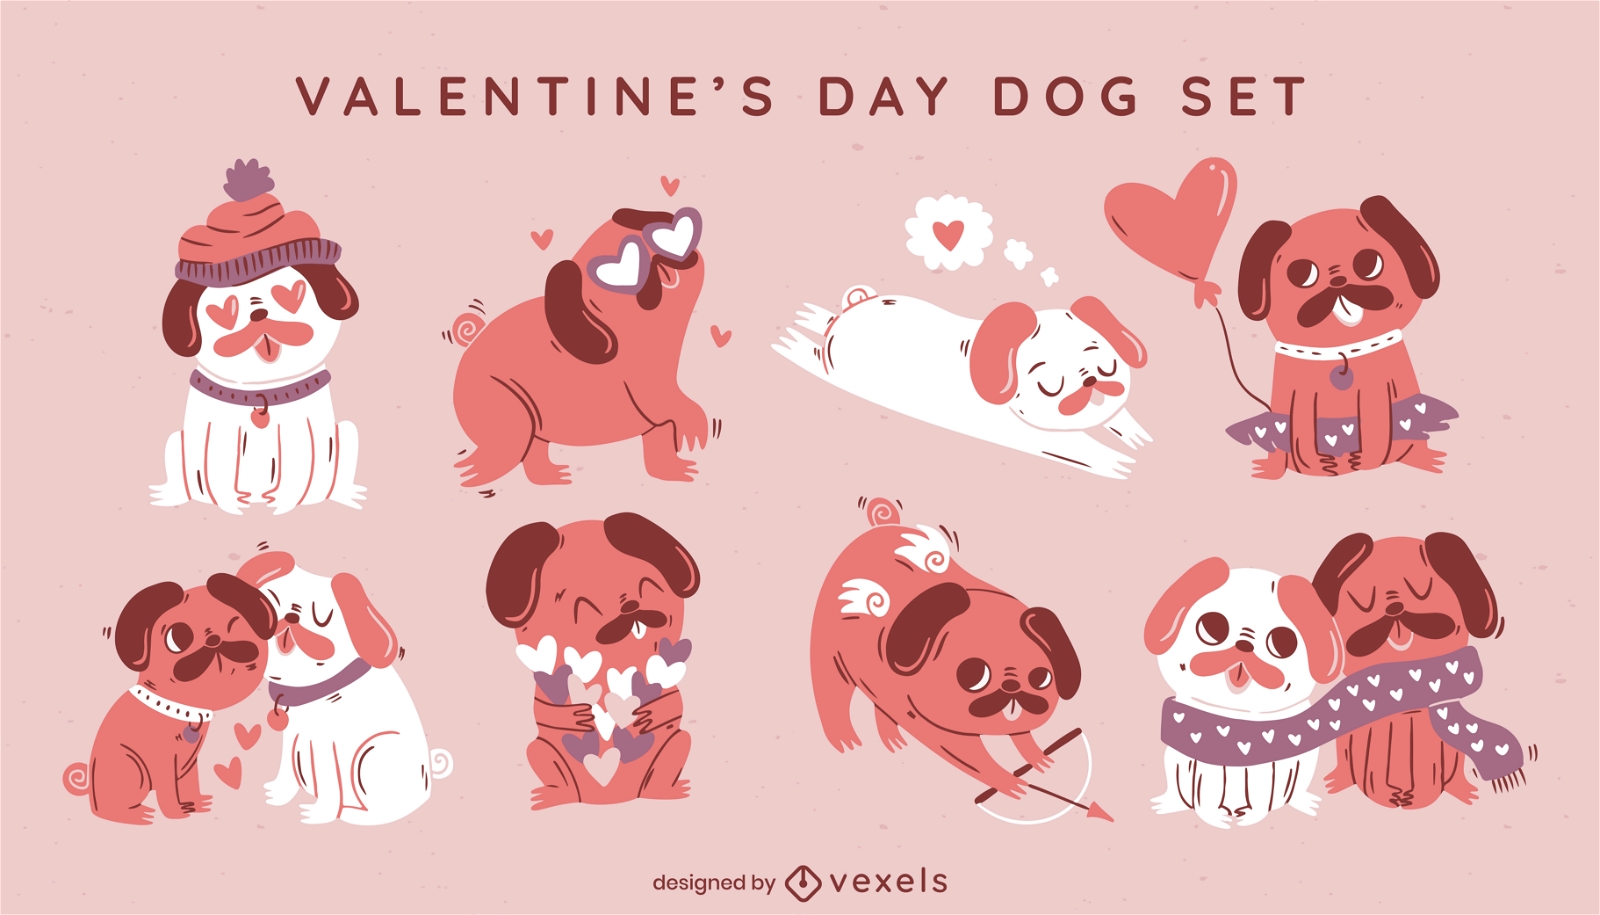 Valentinstag Mops Hund Tiere s??es Set